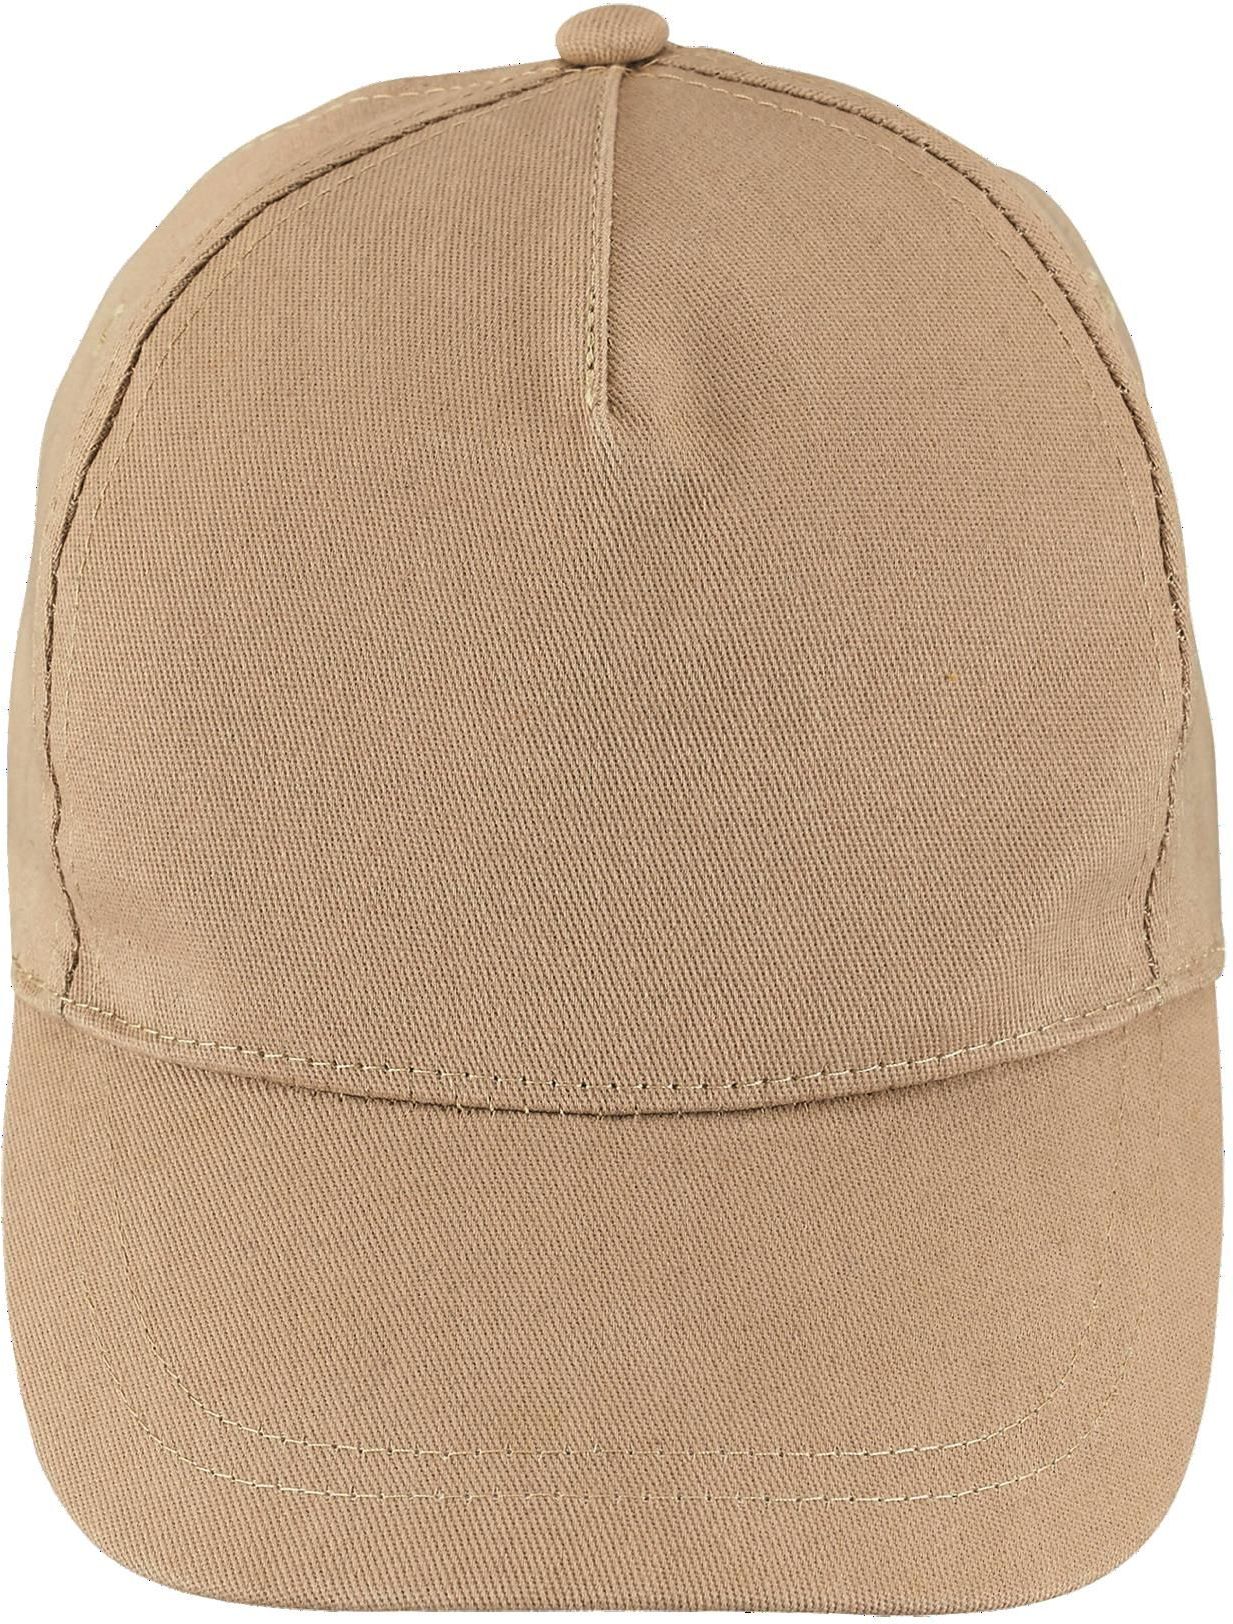 Πεντάφυλλο καπέλο Buzz SOLS 88119 Sand